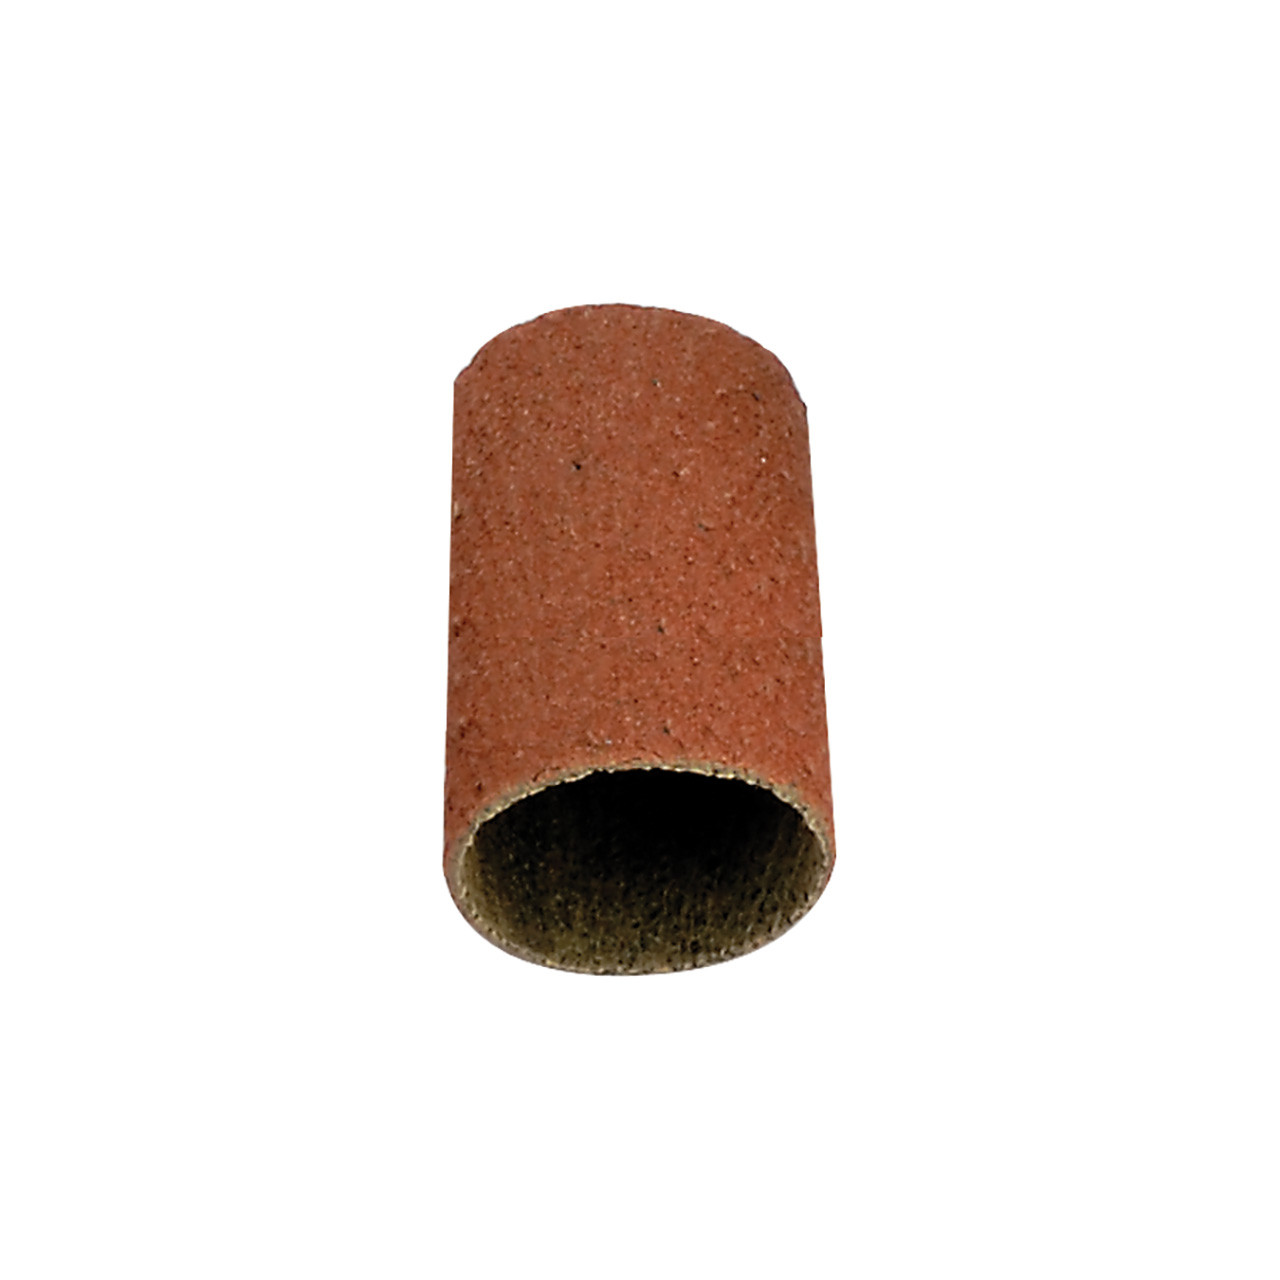 Abrasive Caps - Flat Top 5/8" x 1", 280 Grit (Pkg. of 50)